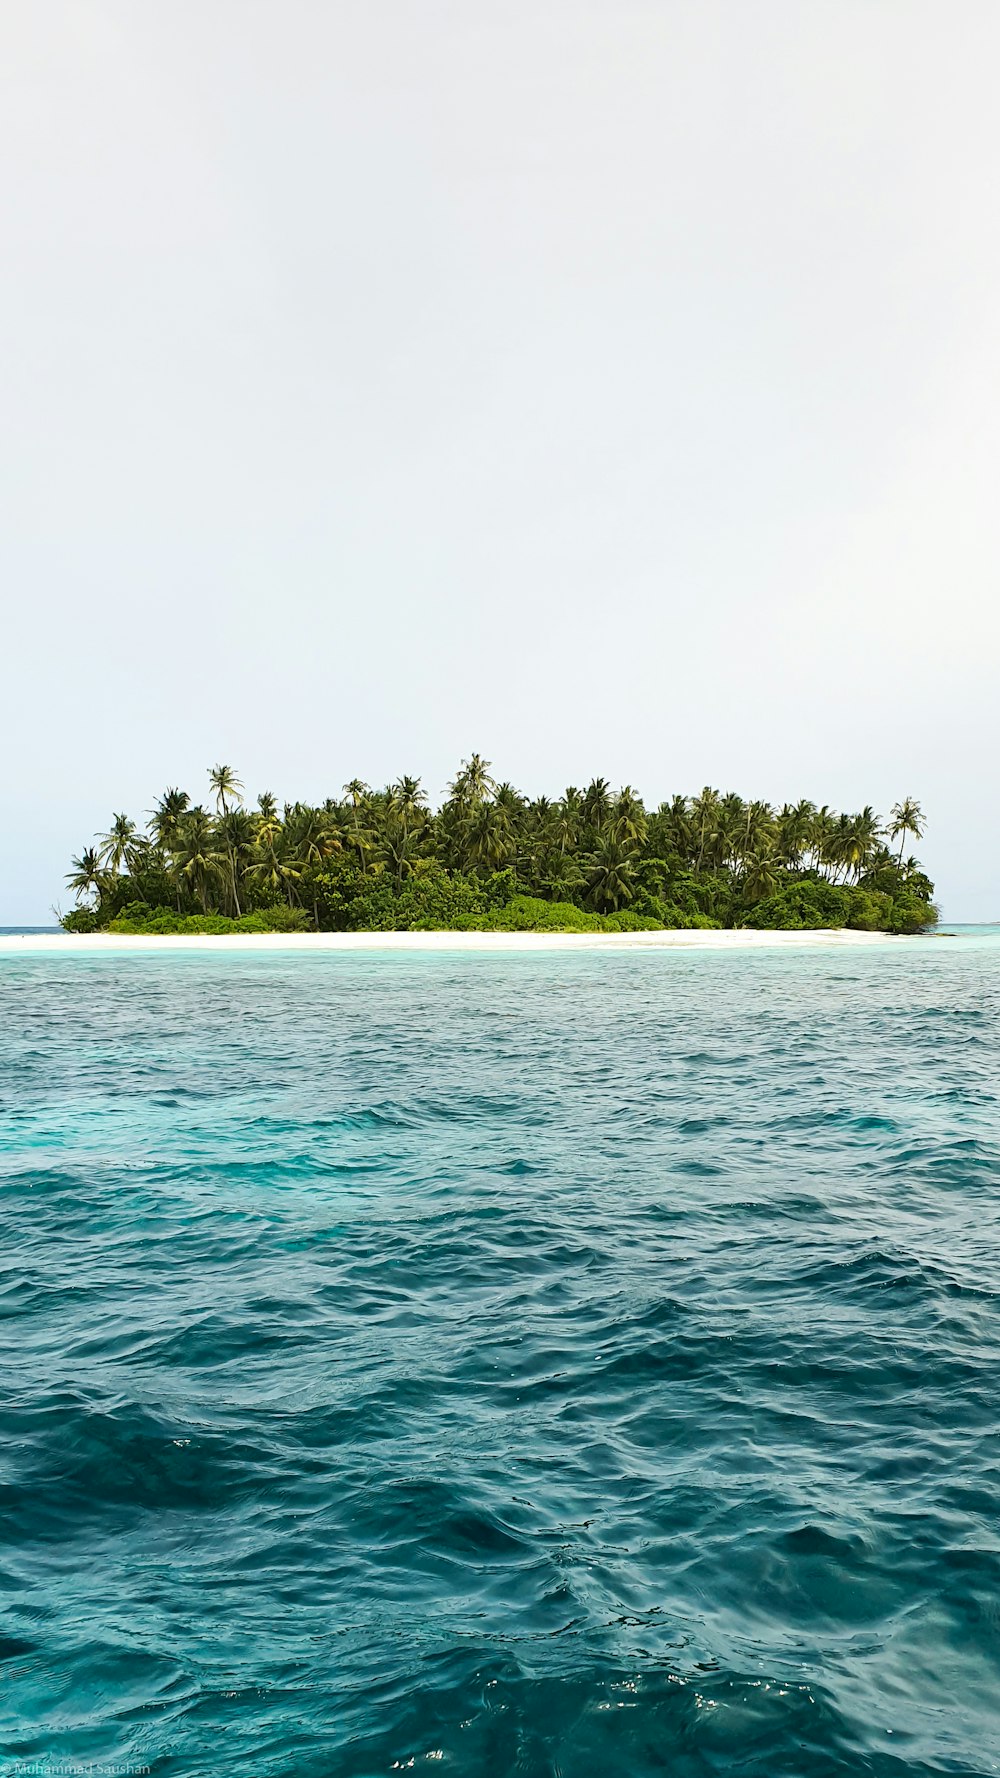 árboles verdes en la isla rodeados de agua durante el día